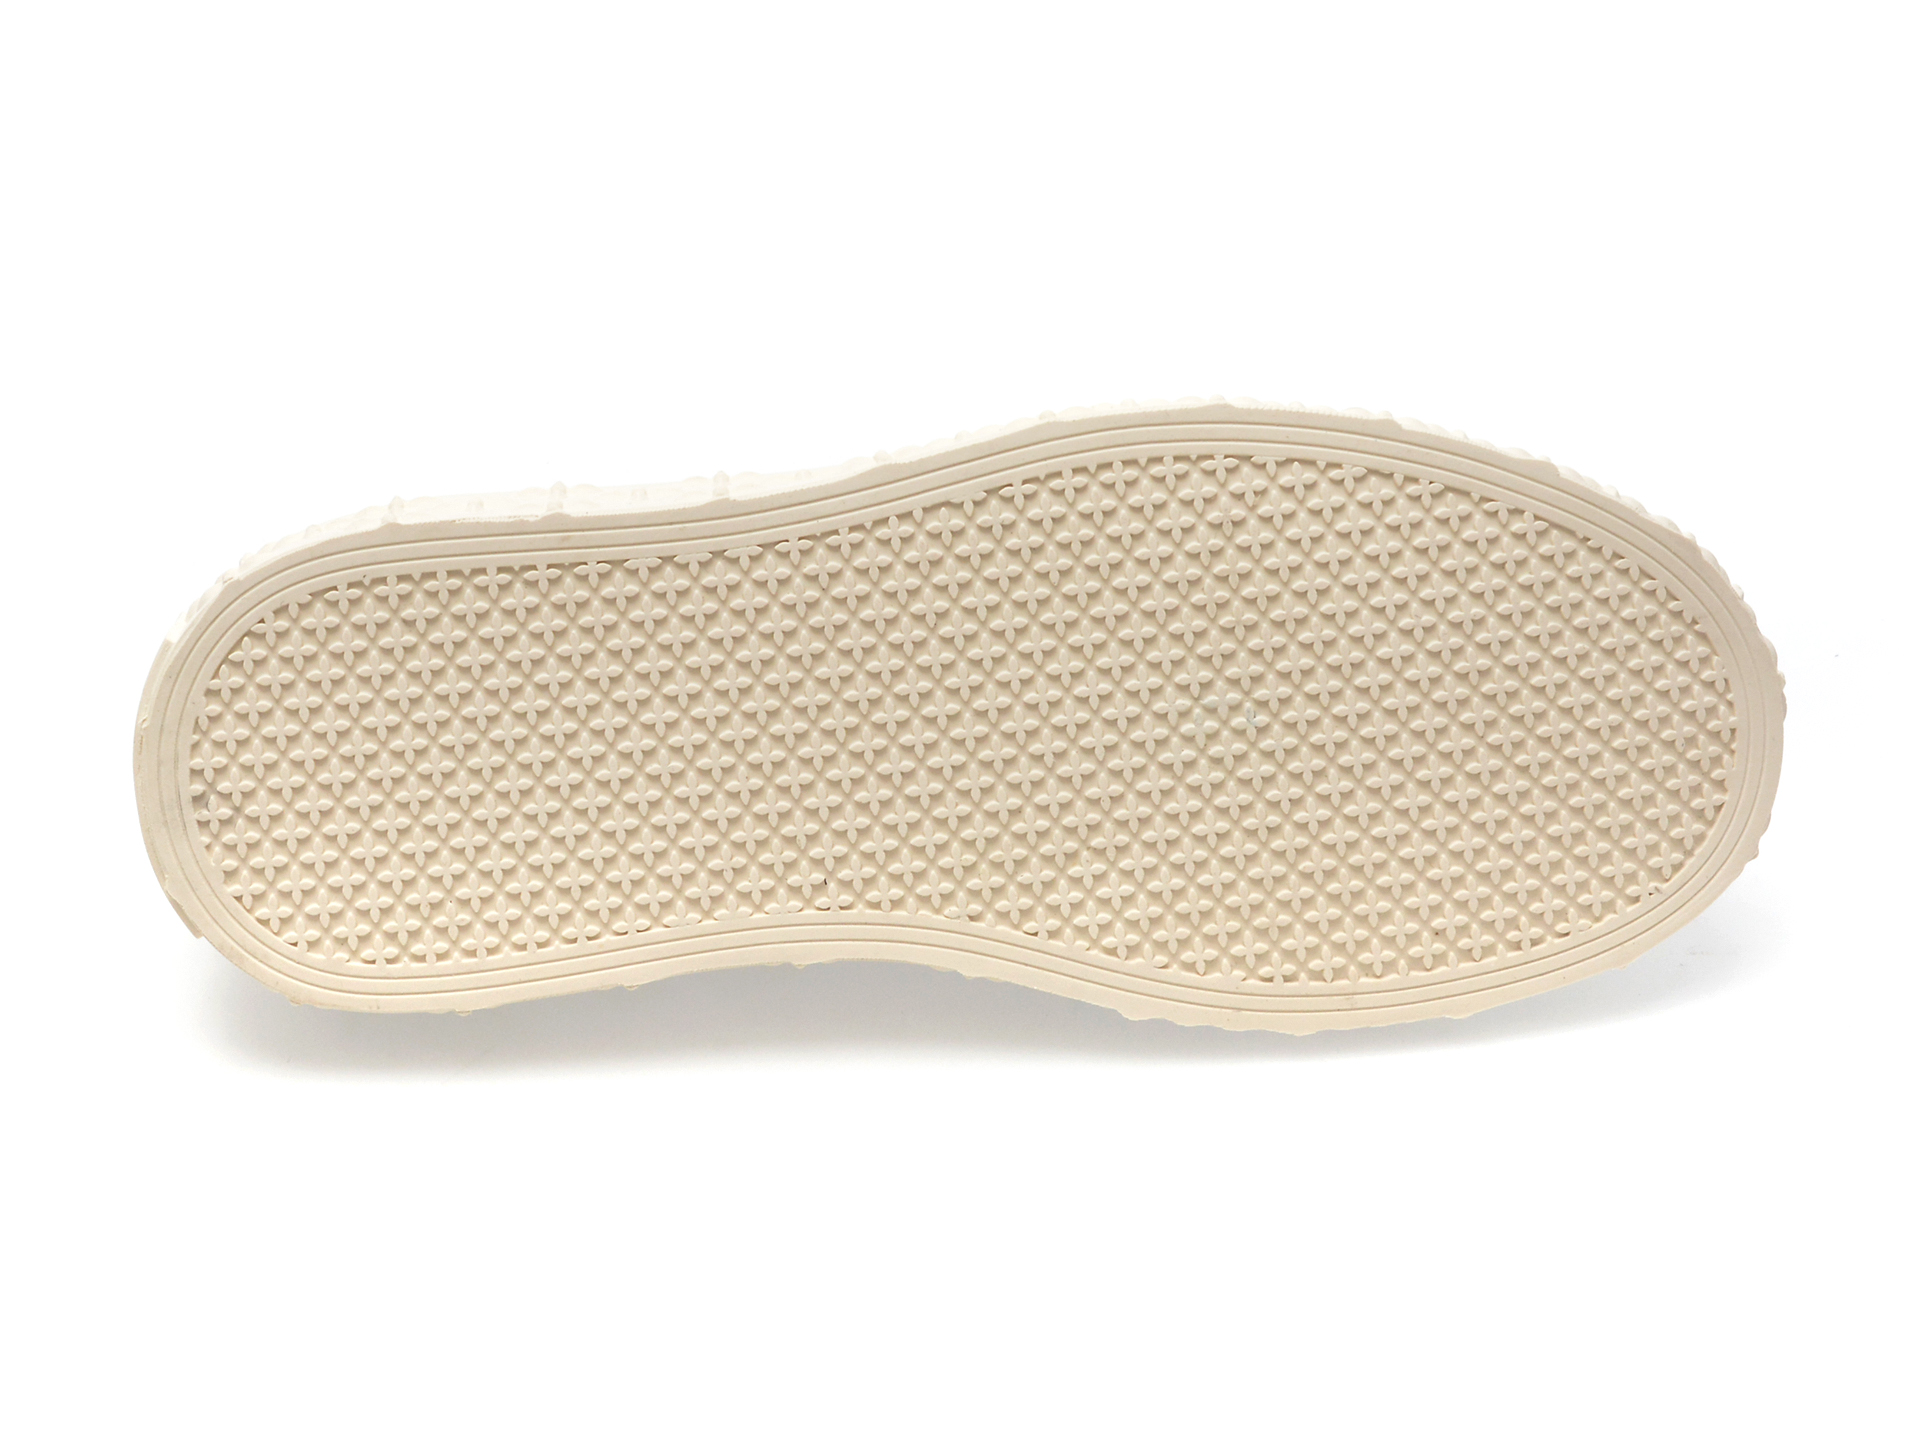 Pantofi FLAVIA PASSINI albi, A9197, din piele naturala